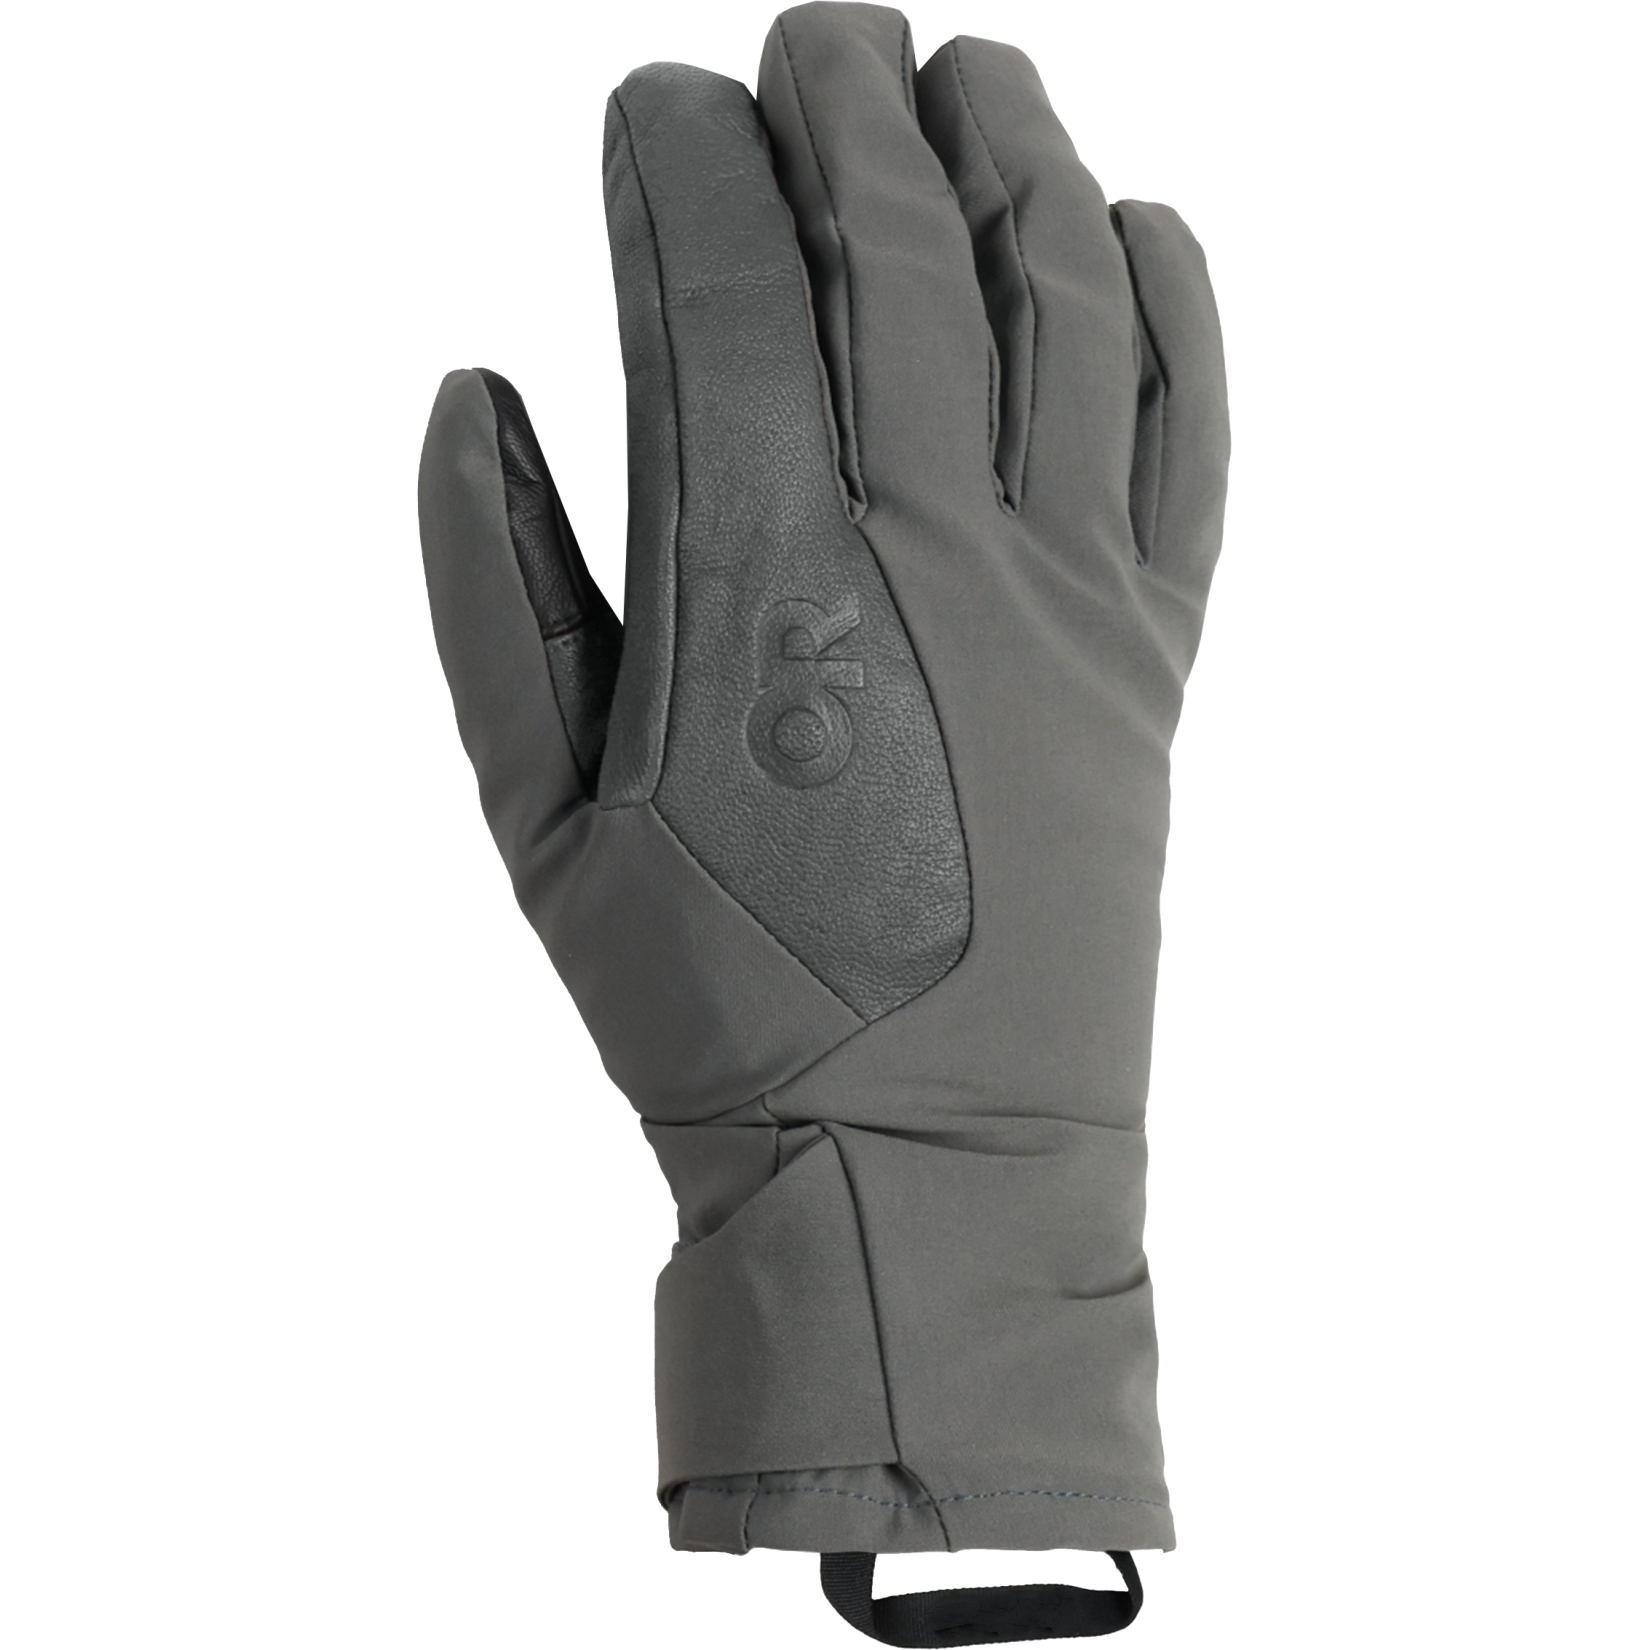 Produktbild von Outdoor Research Herren Sureshot Pro Handschuhe - charcoal